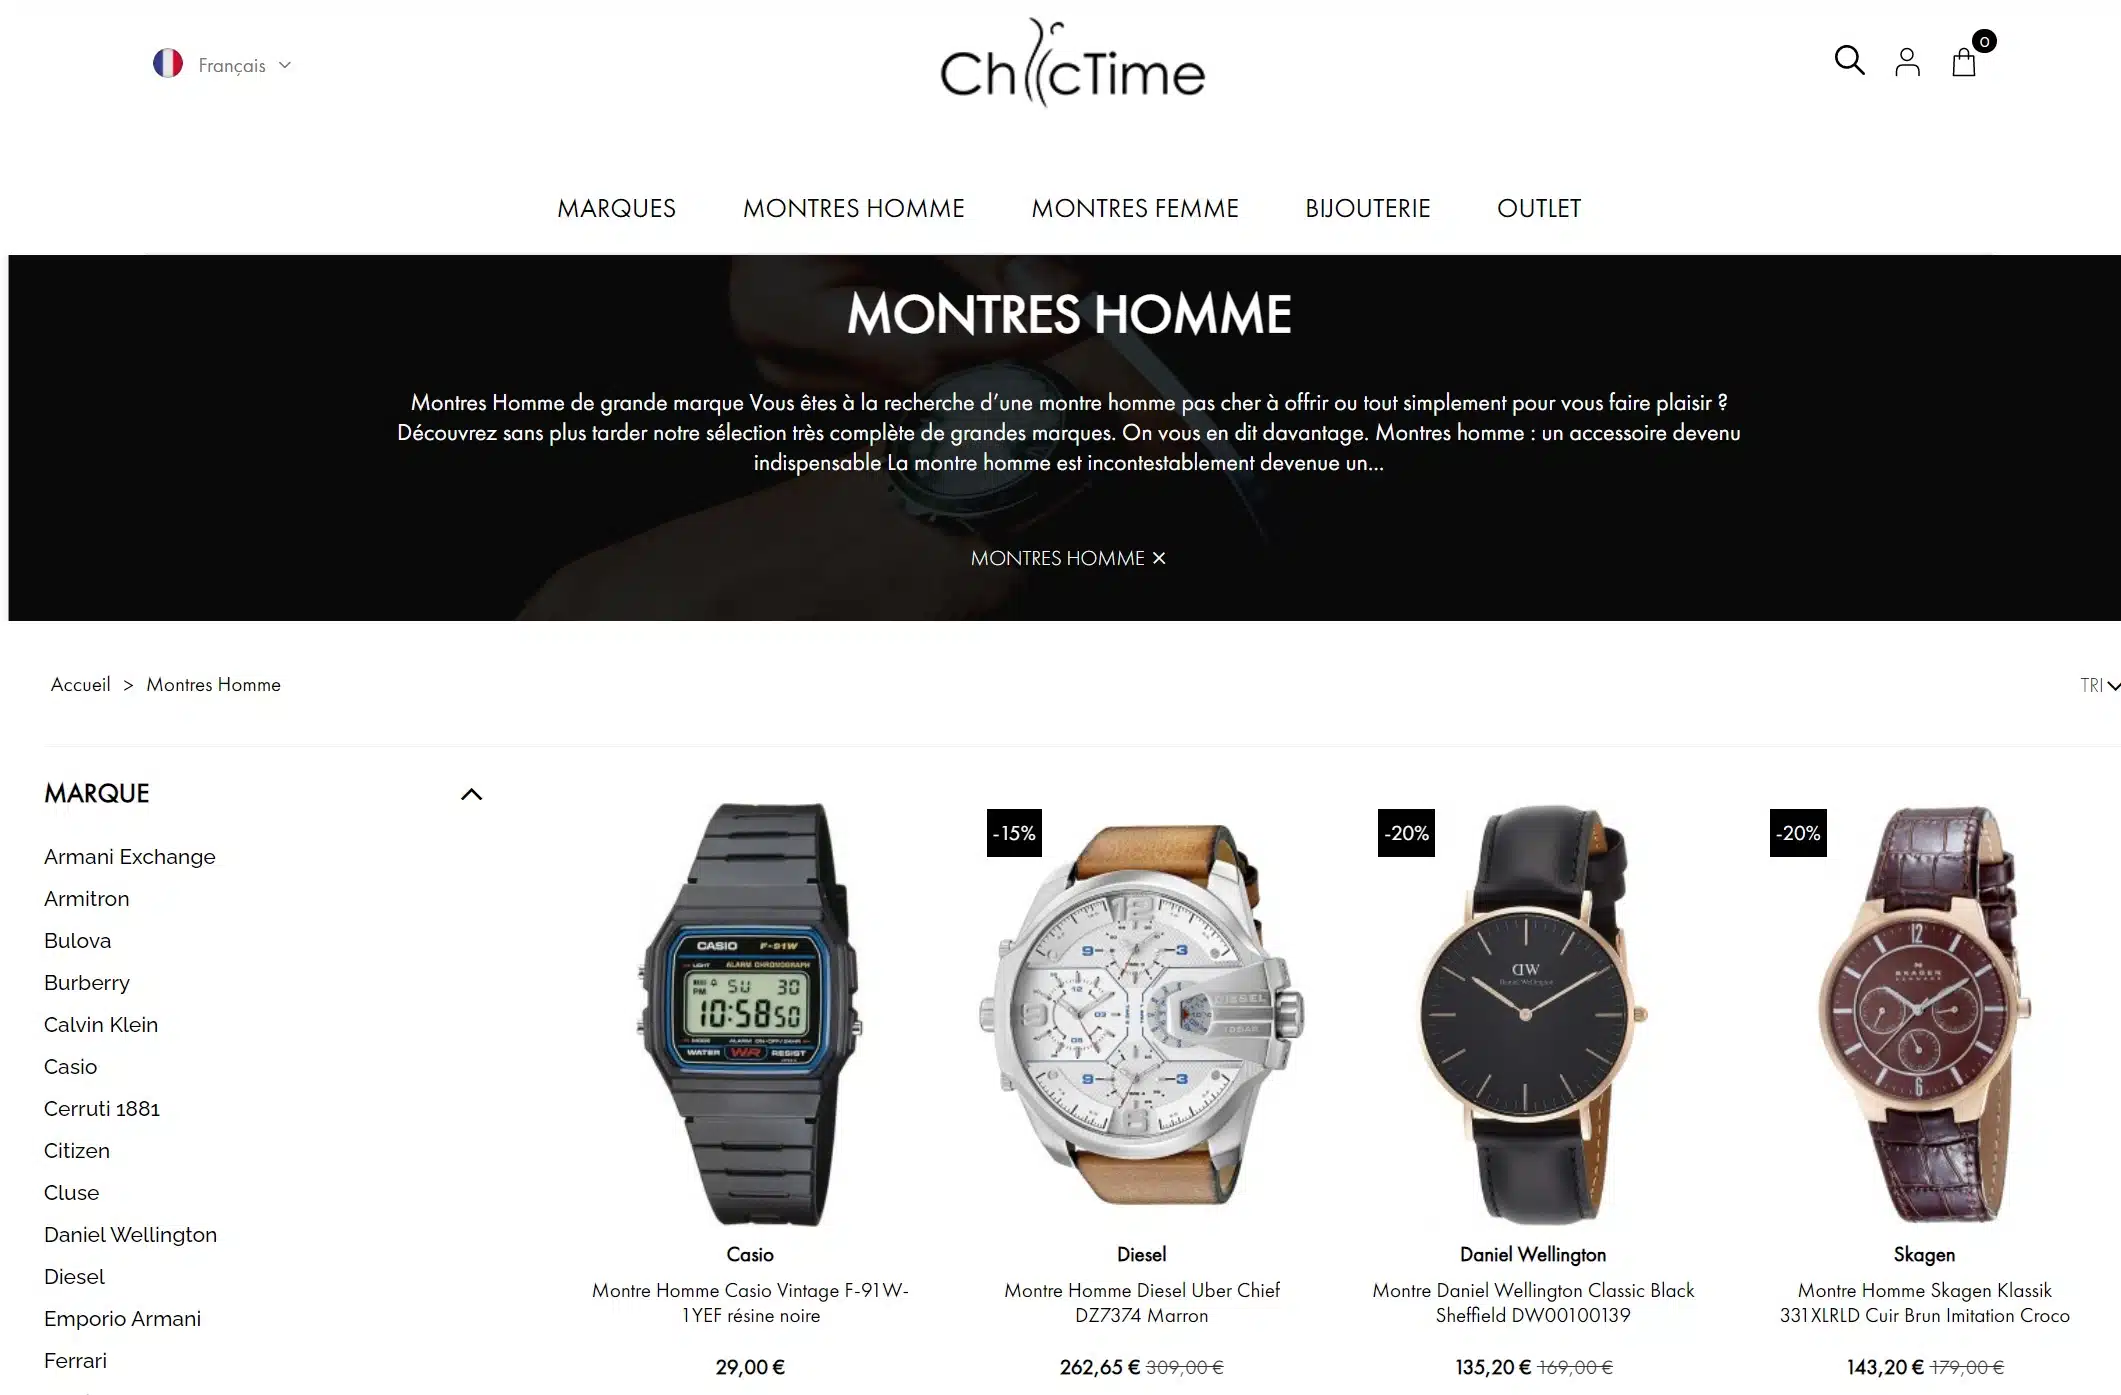 Meilleurs sites pour acheter une montre - ChicTime